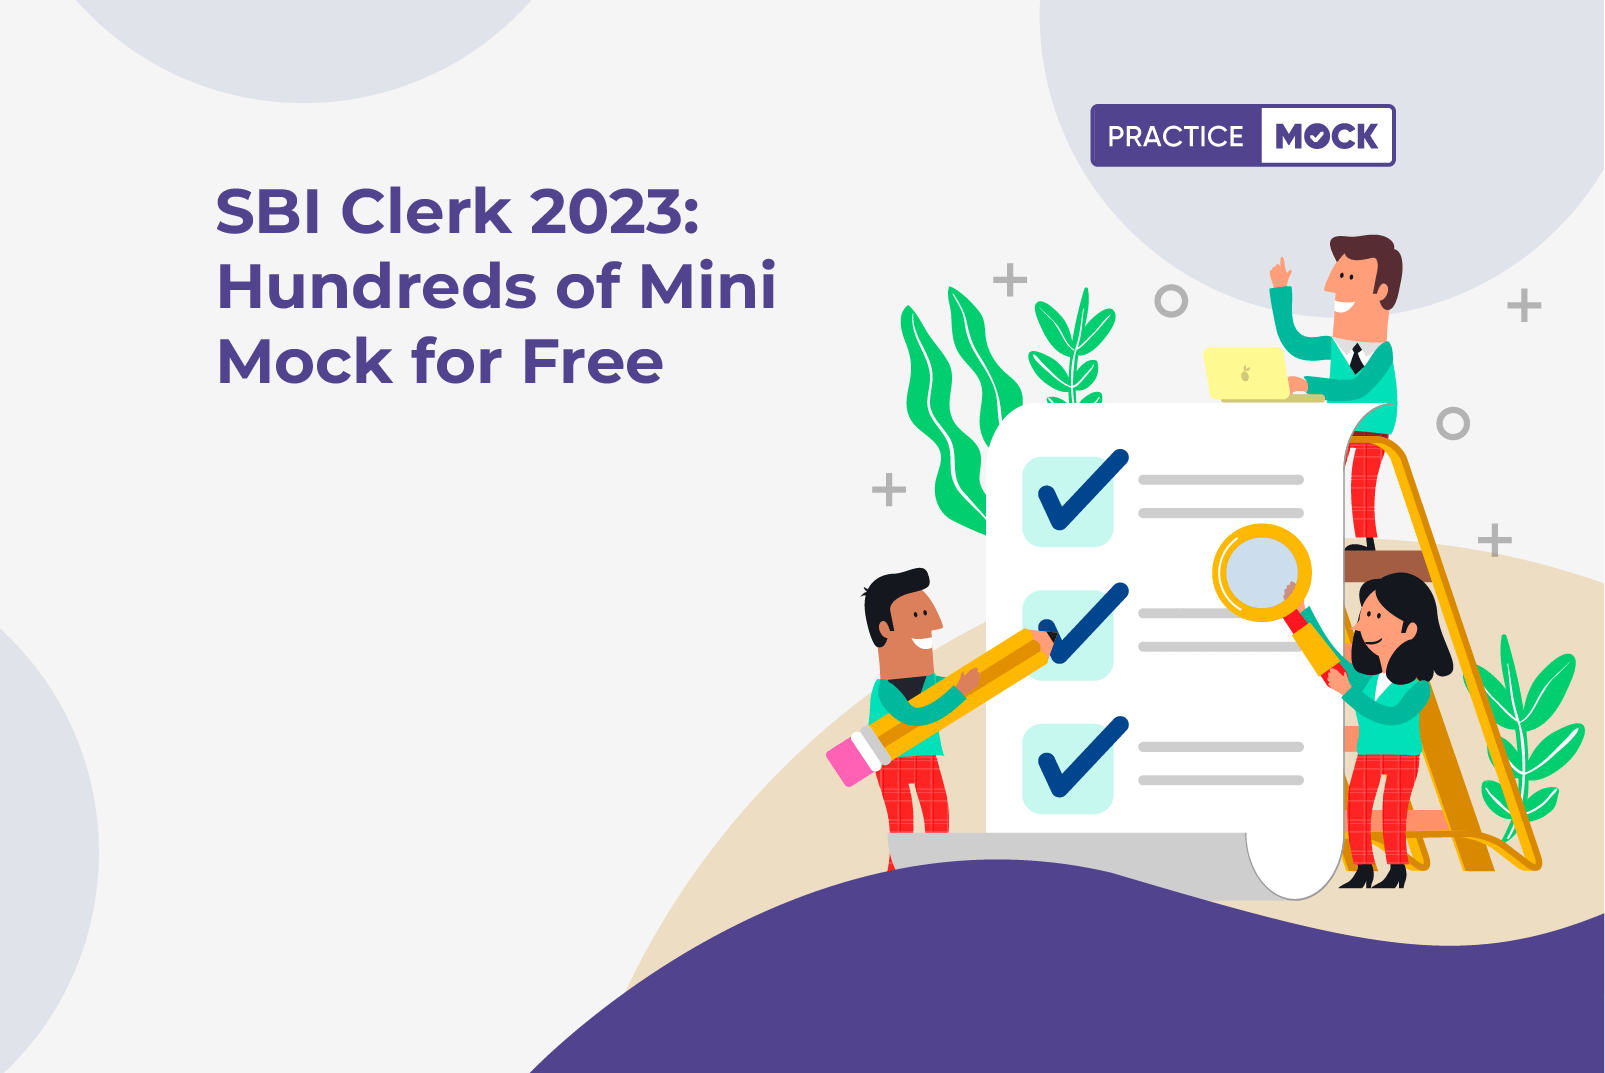 SBI Clerk 2023 Hundreds of Mini Mock for Free (1)